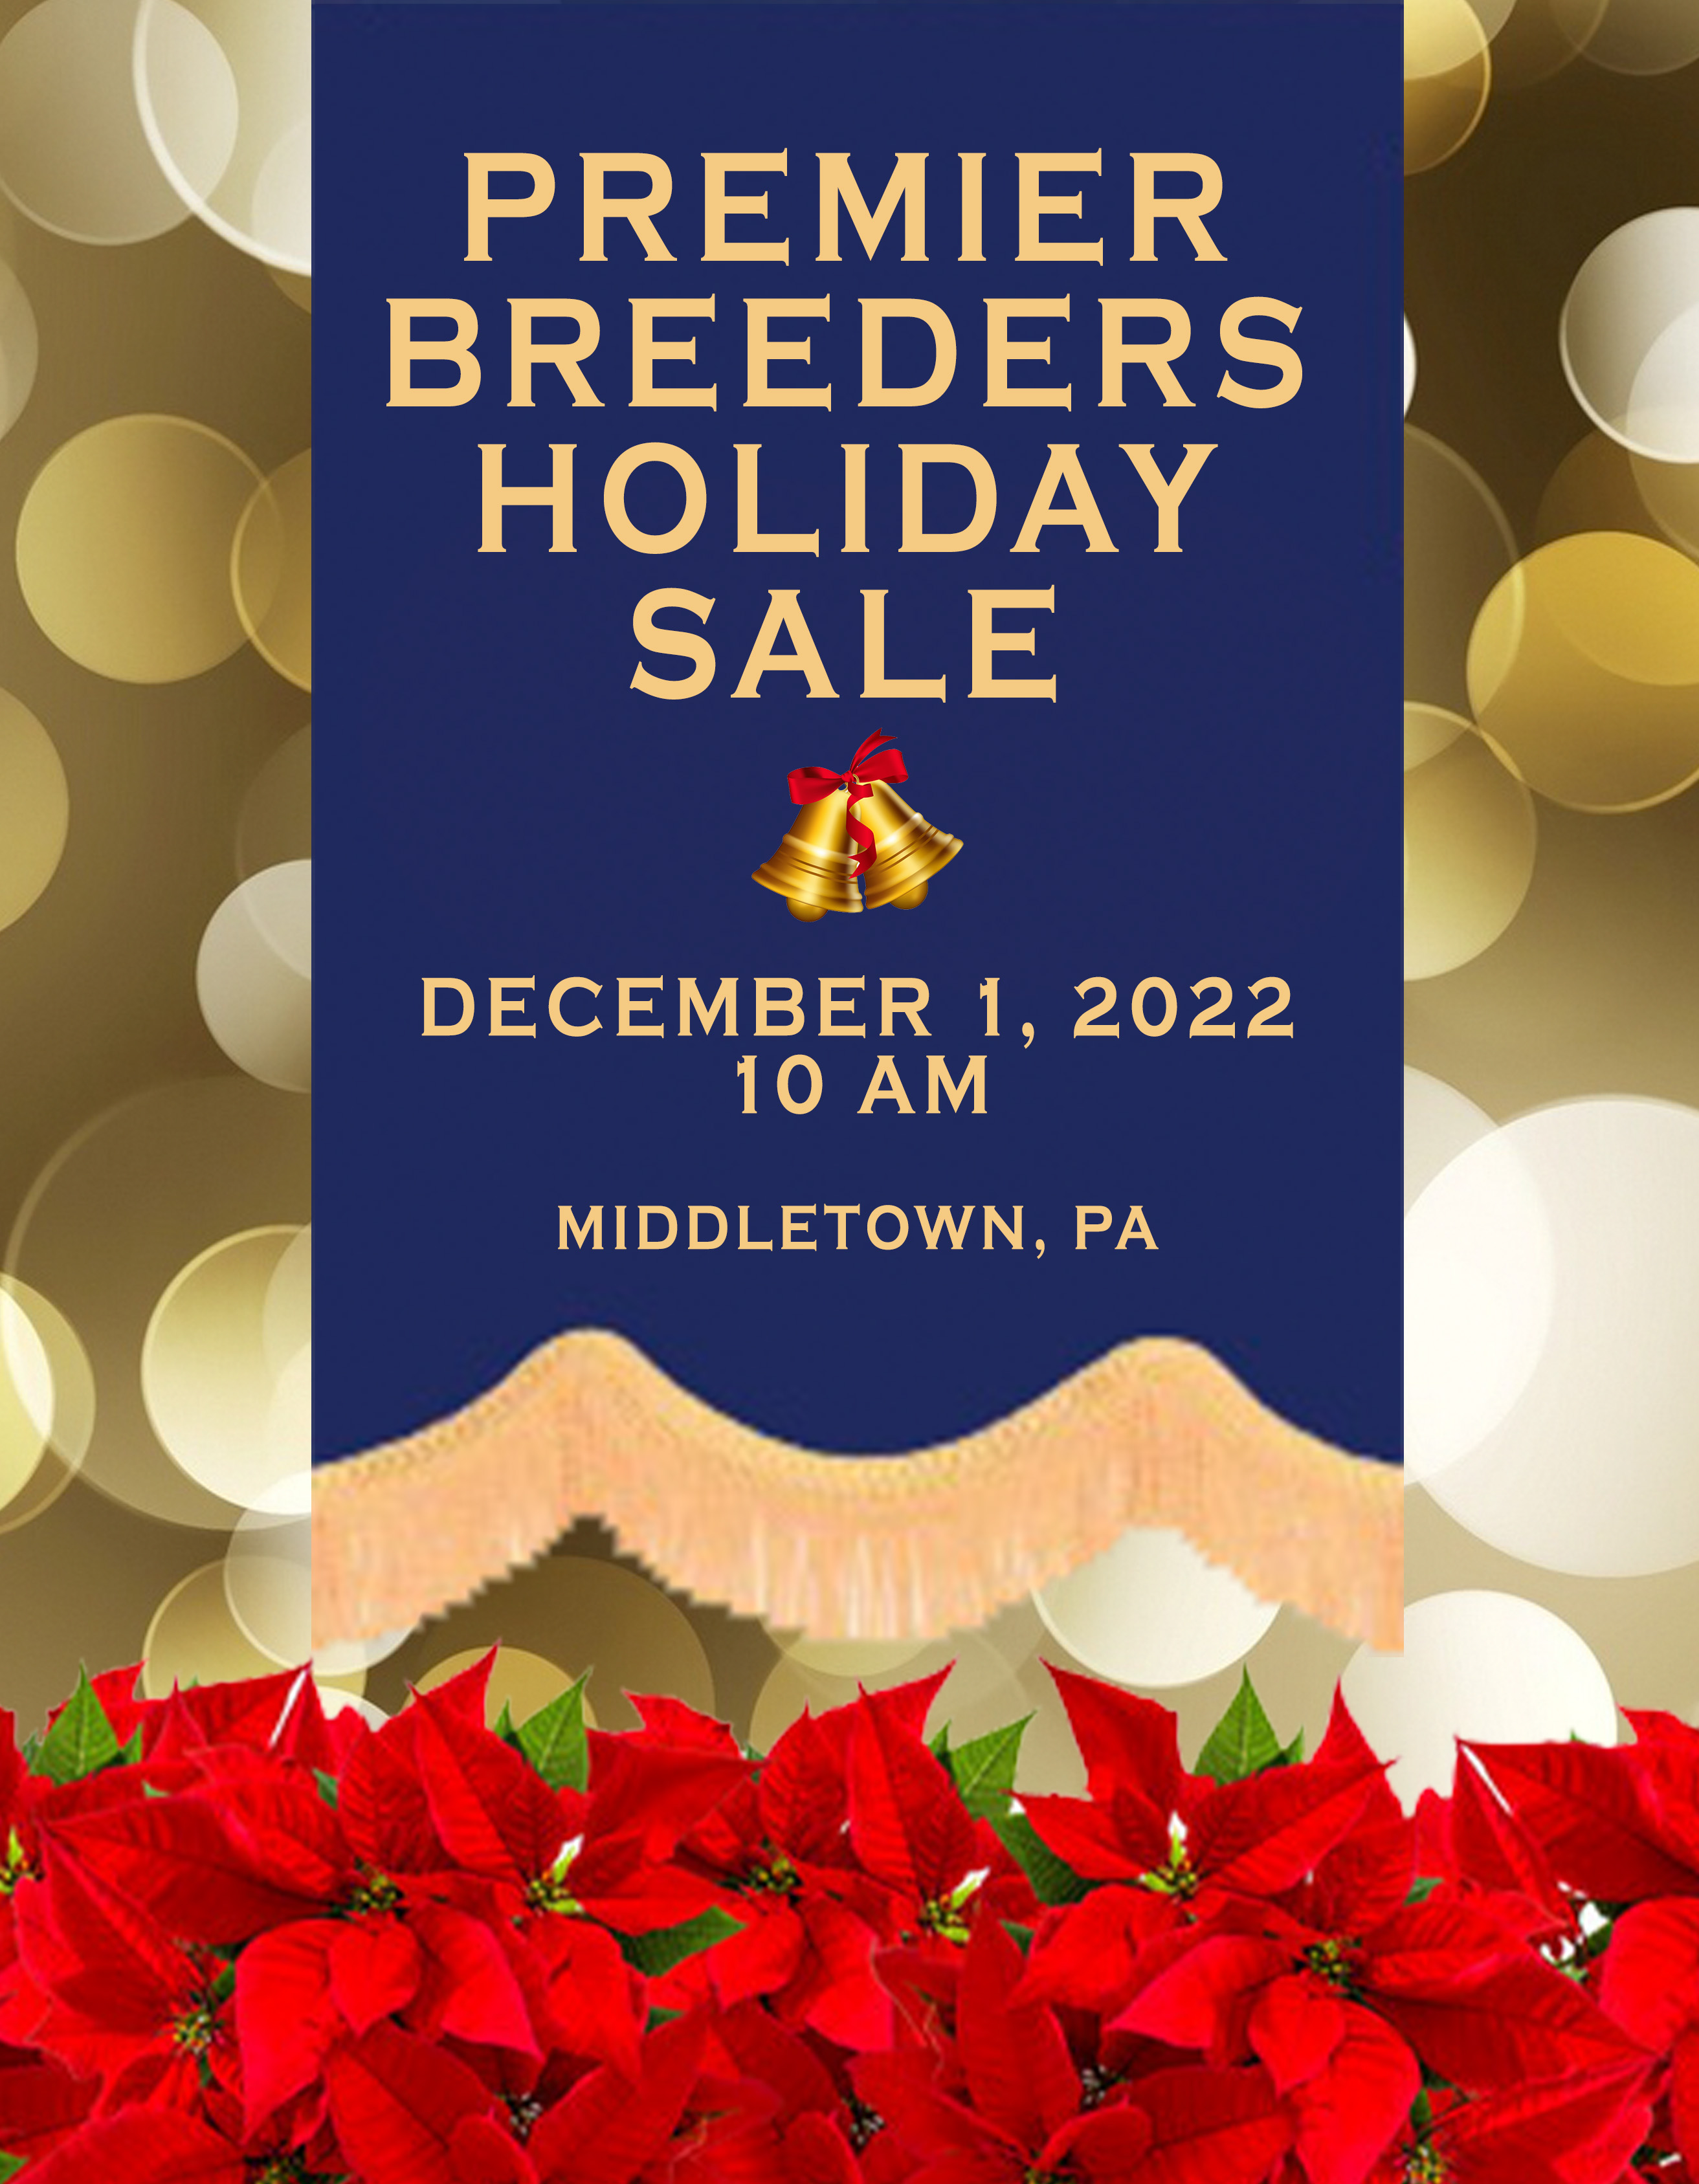 Premier Breeders Holiday Sale